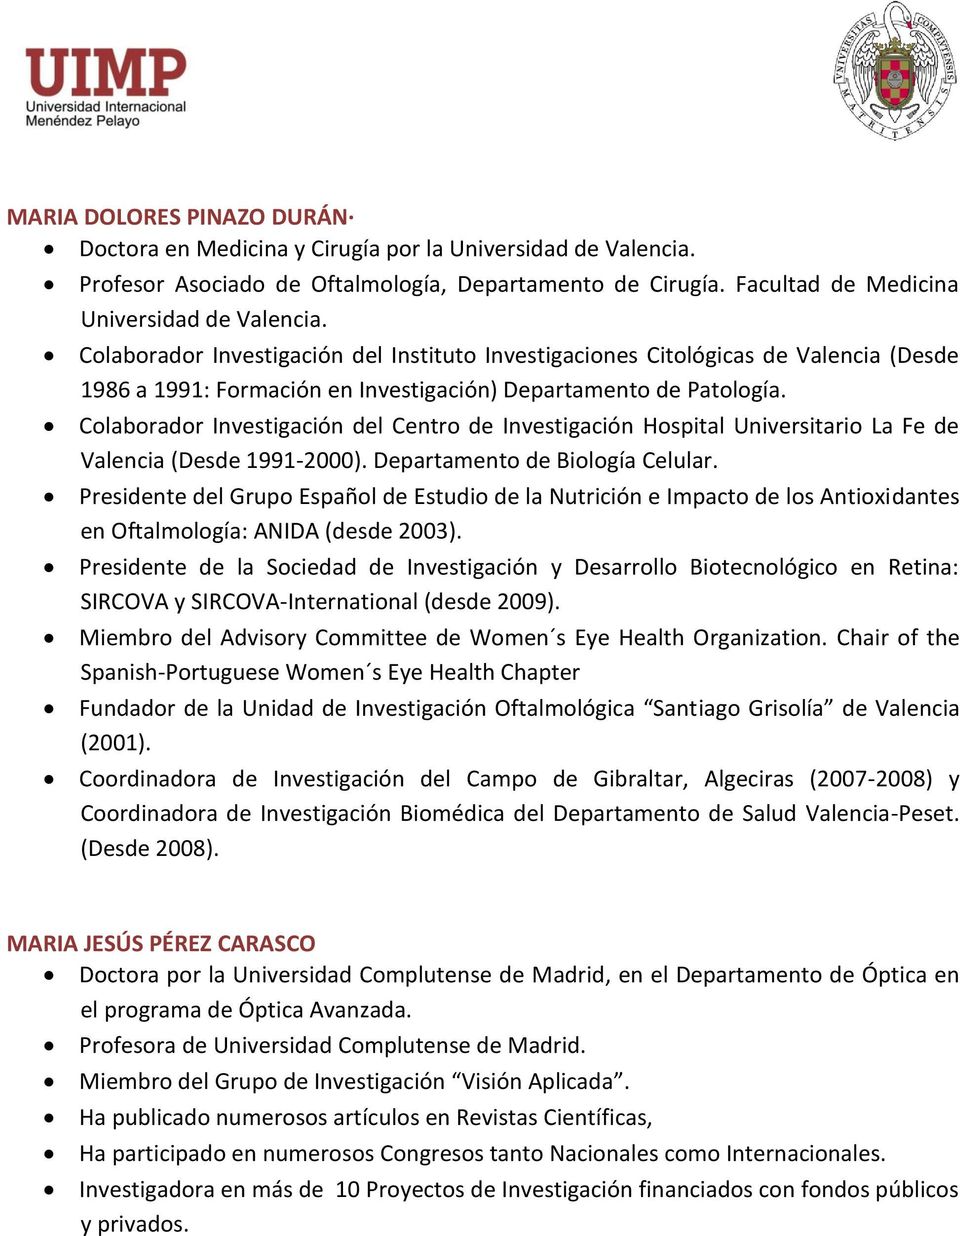 Colaborador Investigación del Centro de Investigación Hospital Universitario La Fe de Valencia (Desde 1991-2000). Departamento de Biología Celular.